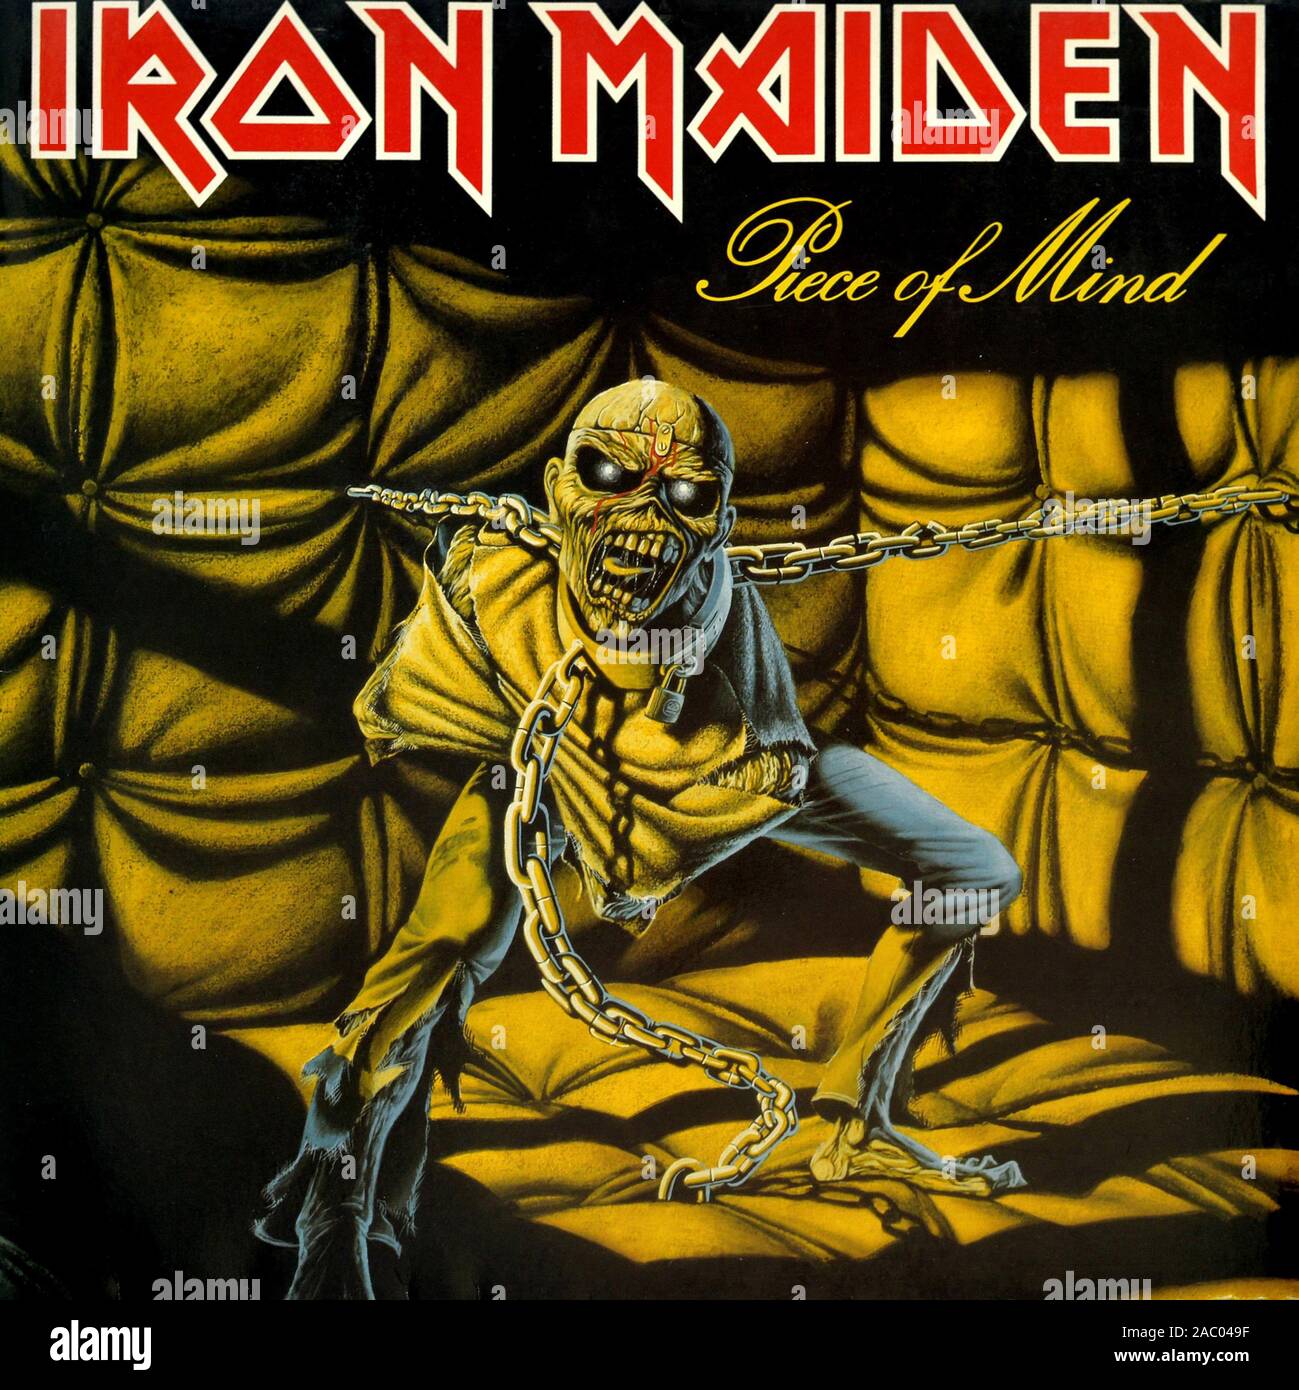 Iron Maiden pezzo di mente - Vintage vinile copertina album Foto Stock